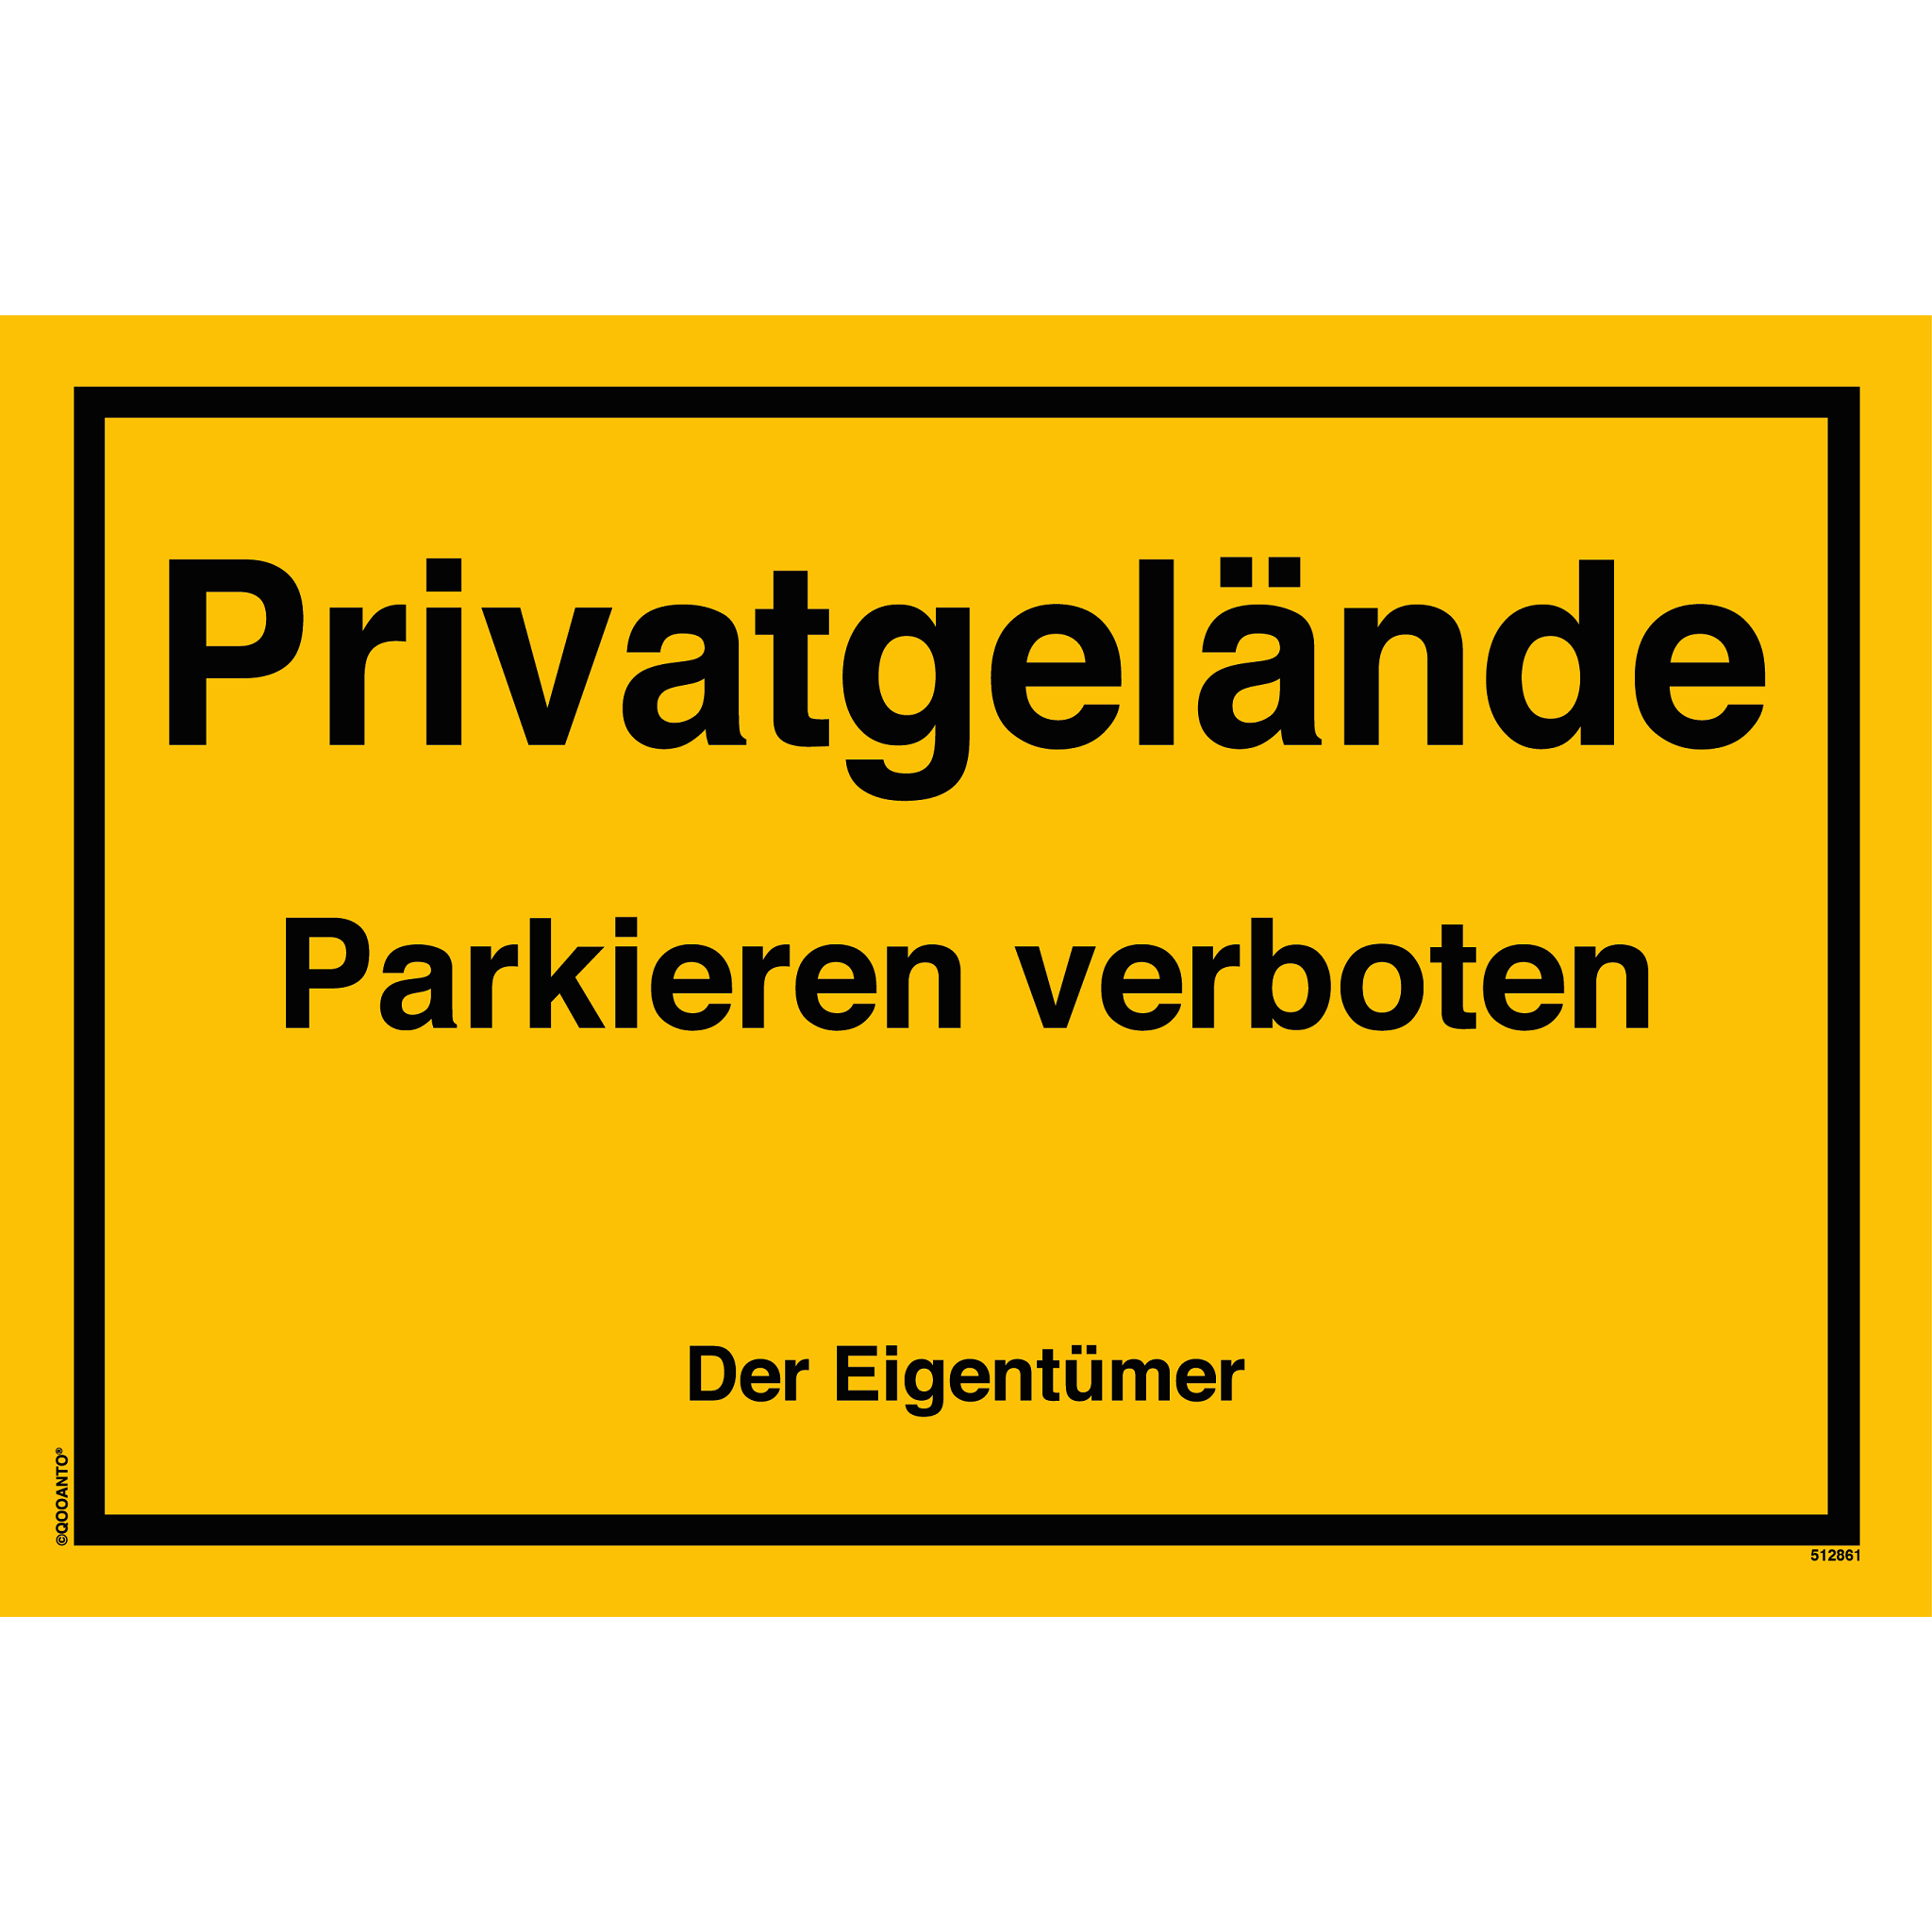 Privatgelände Parkieren verboten Der Eigentümer, gelb, Schild